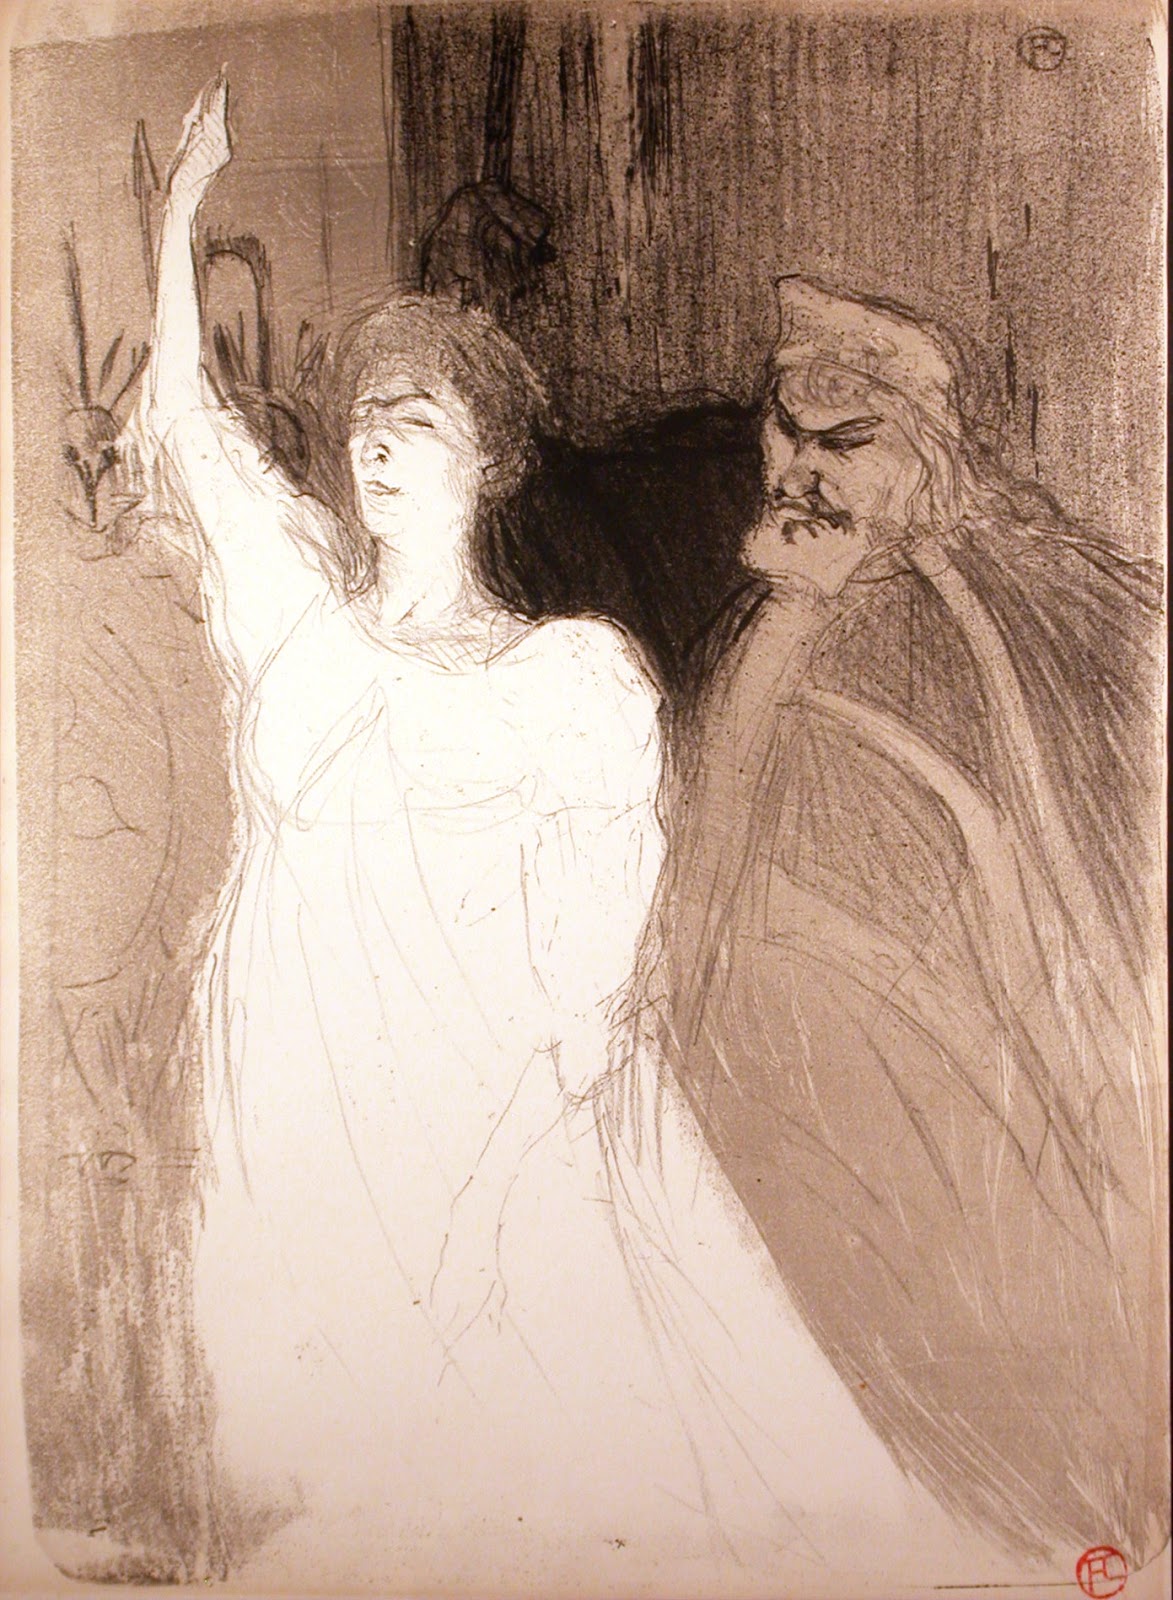 Henri+de+Toulouse+Lautrec-1864-1901 (140).jpg